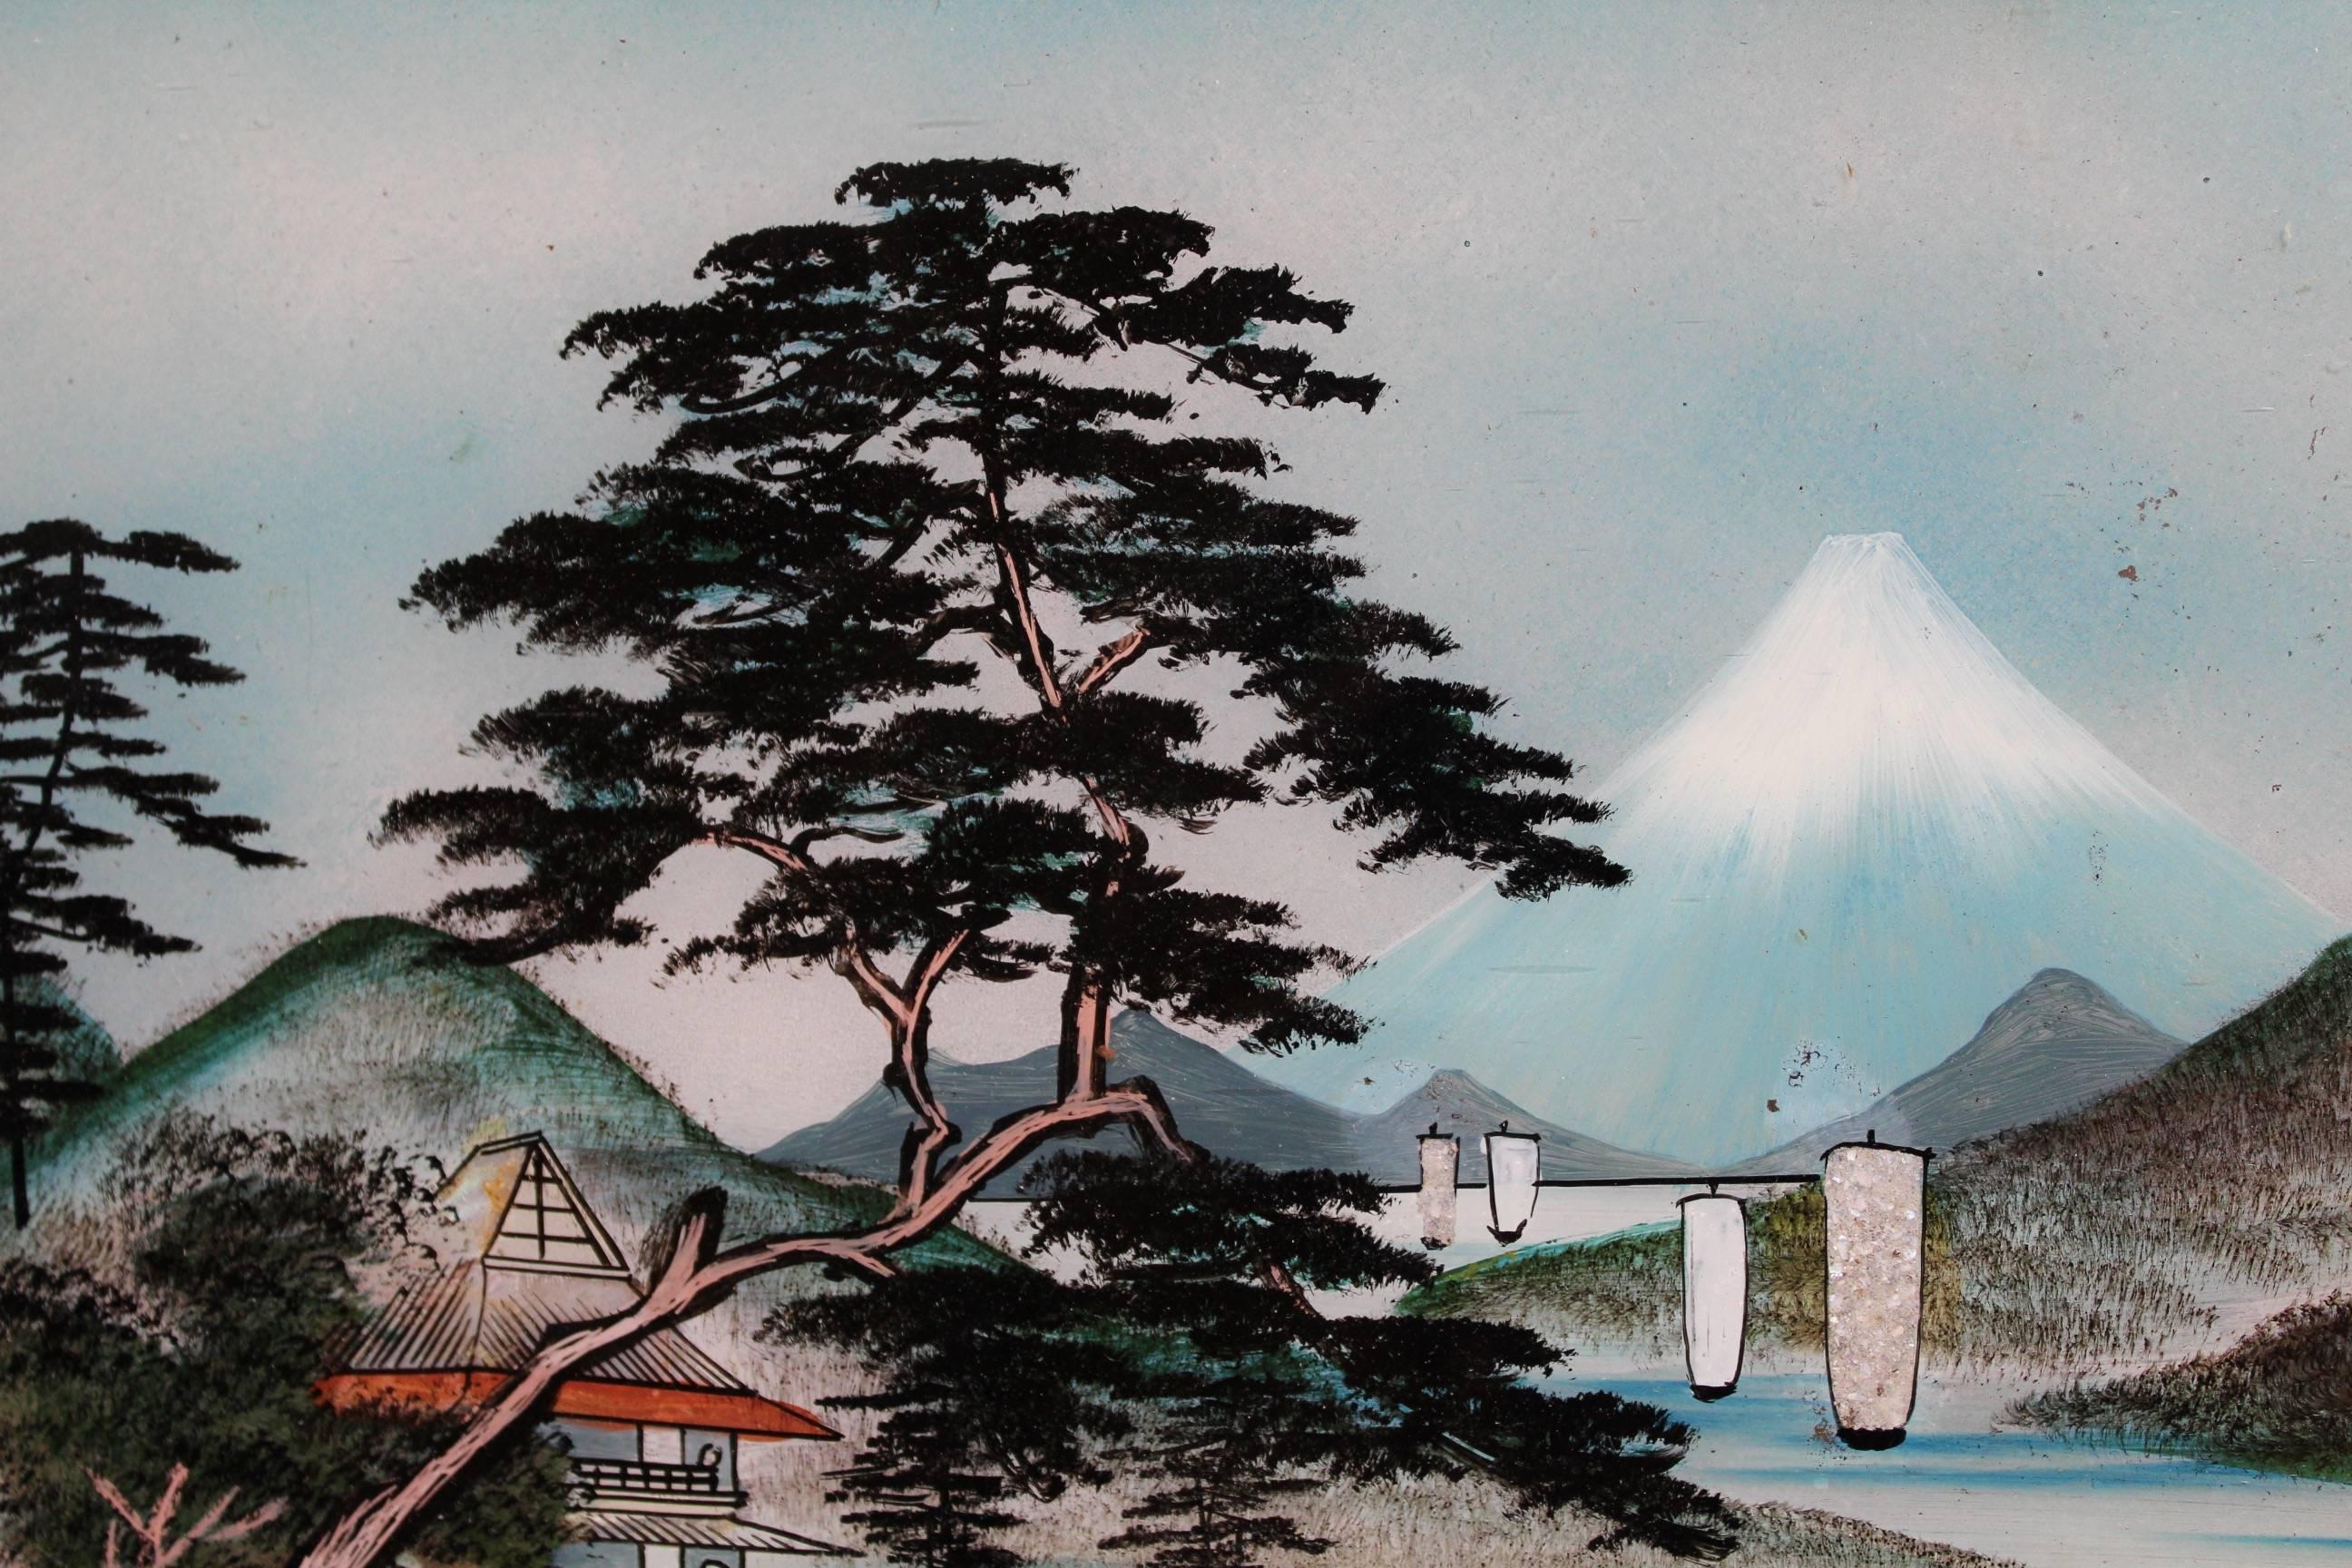 Paire de paysages japonais en verre inversé du début du 20e siècle représentant chacun un lac entouré de collines et de maisons avec de hauts arbres. Sur l'un d'eux, l'arrière-plan supérieur droit montre le mont Fuji, symbole du Japon.
Il y a eu -